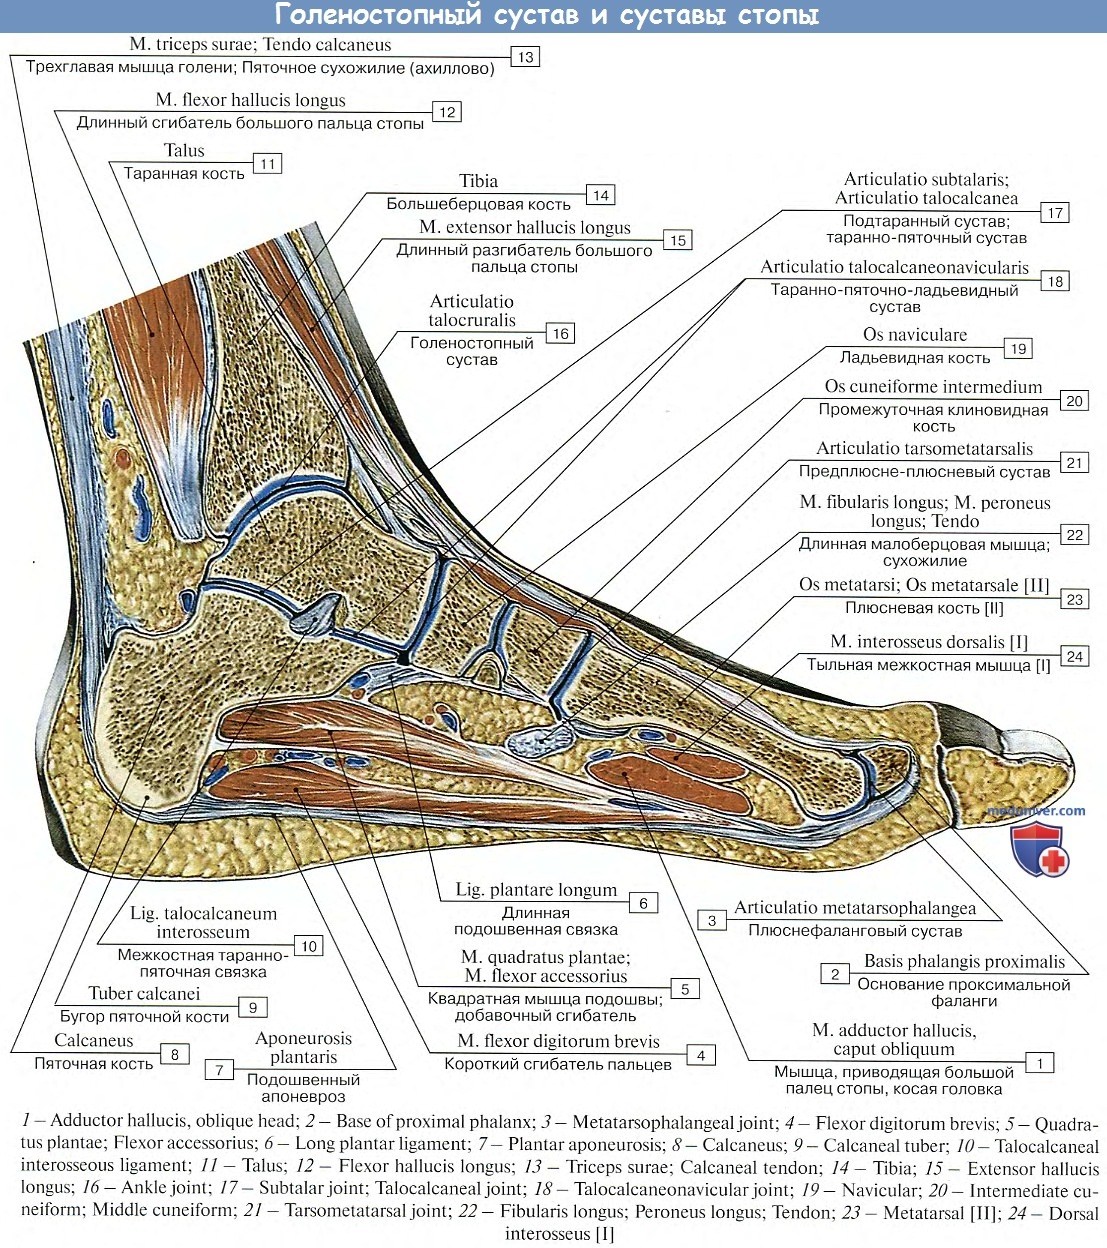 Мышцы стопы человека анатомия и связки фото